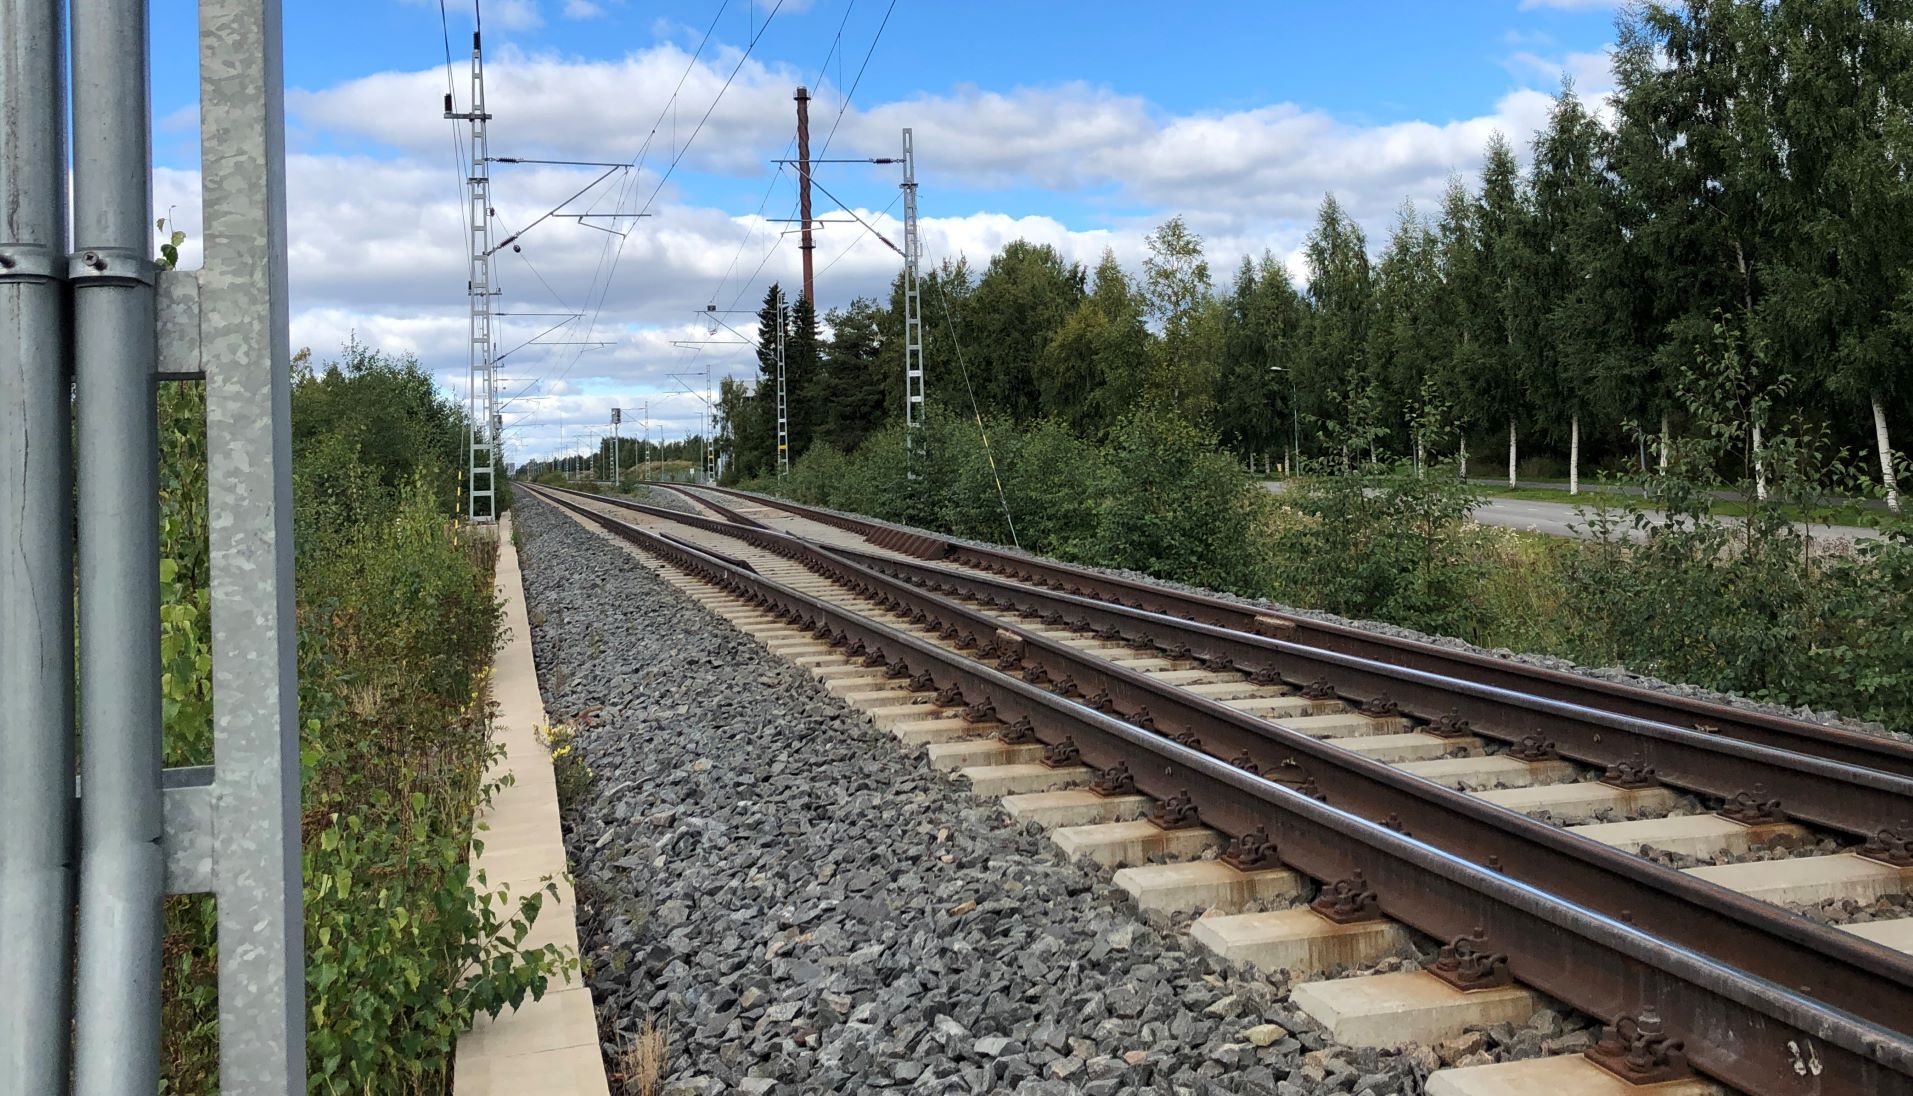 Näkymä Liminka-Oulu rataosuudelta